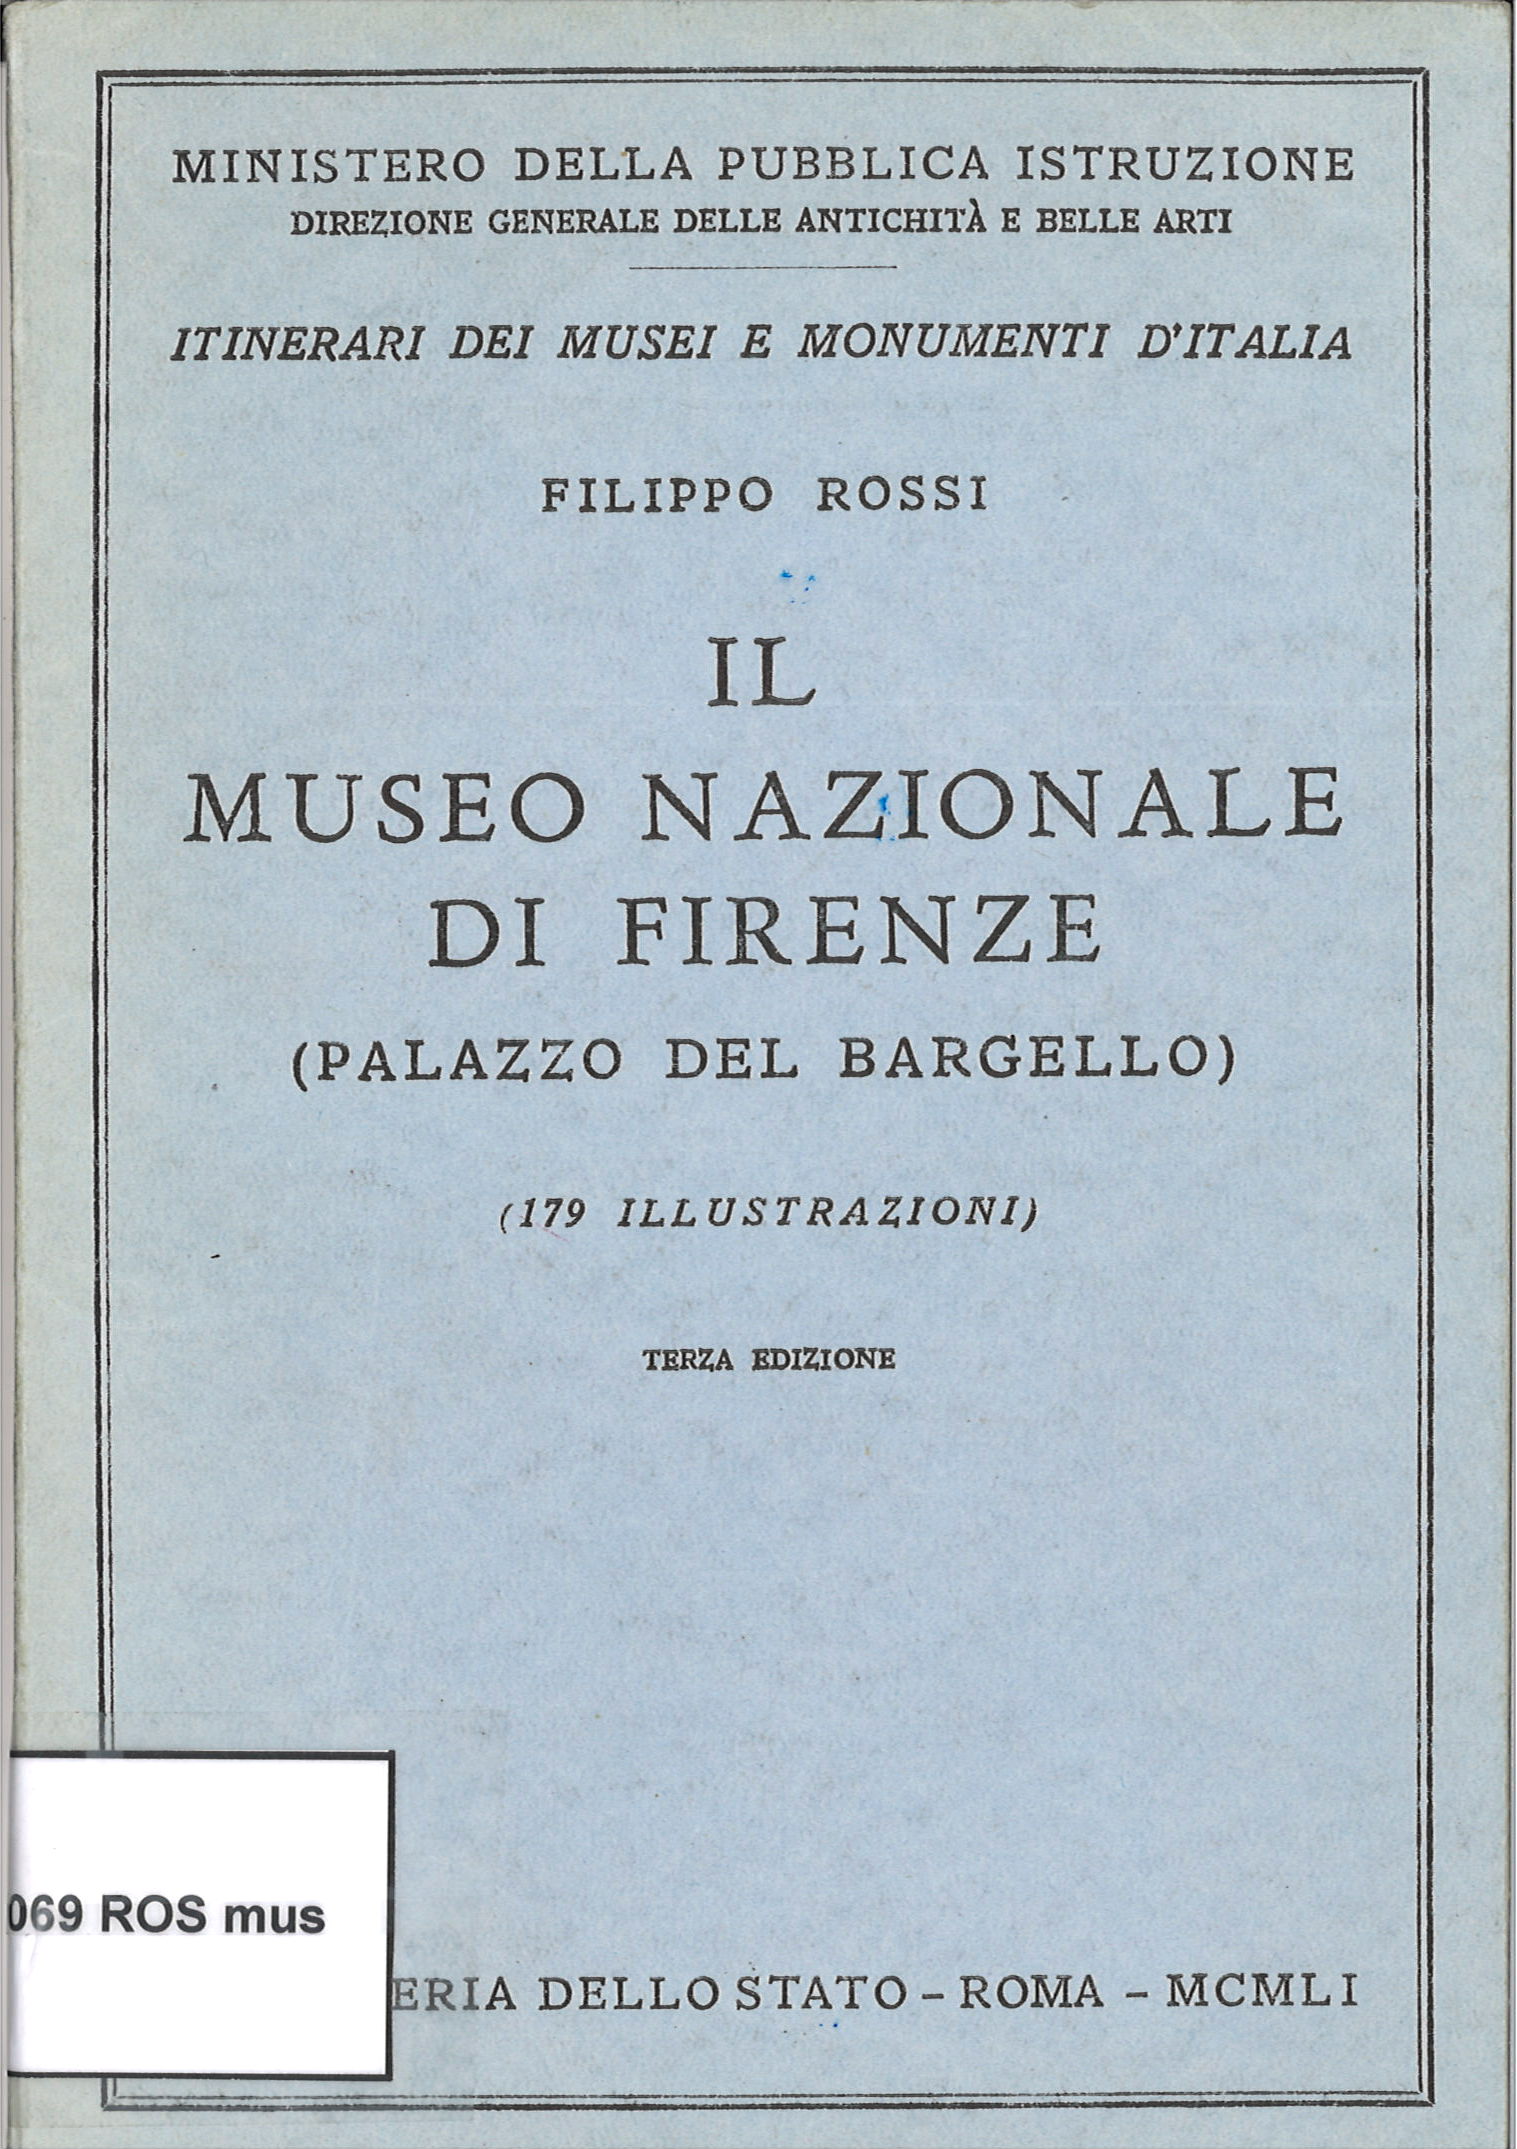 Il Museo Nazionale de Firenze (Palazzo del Barguello)-Filippo Rossi-image